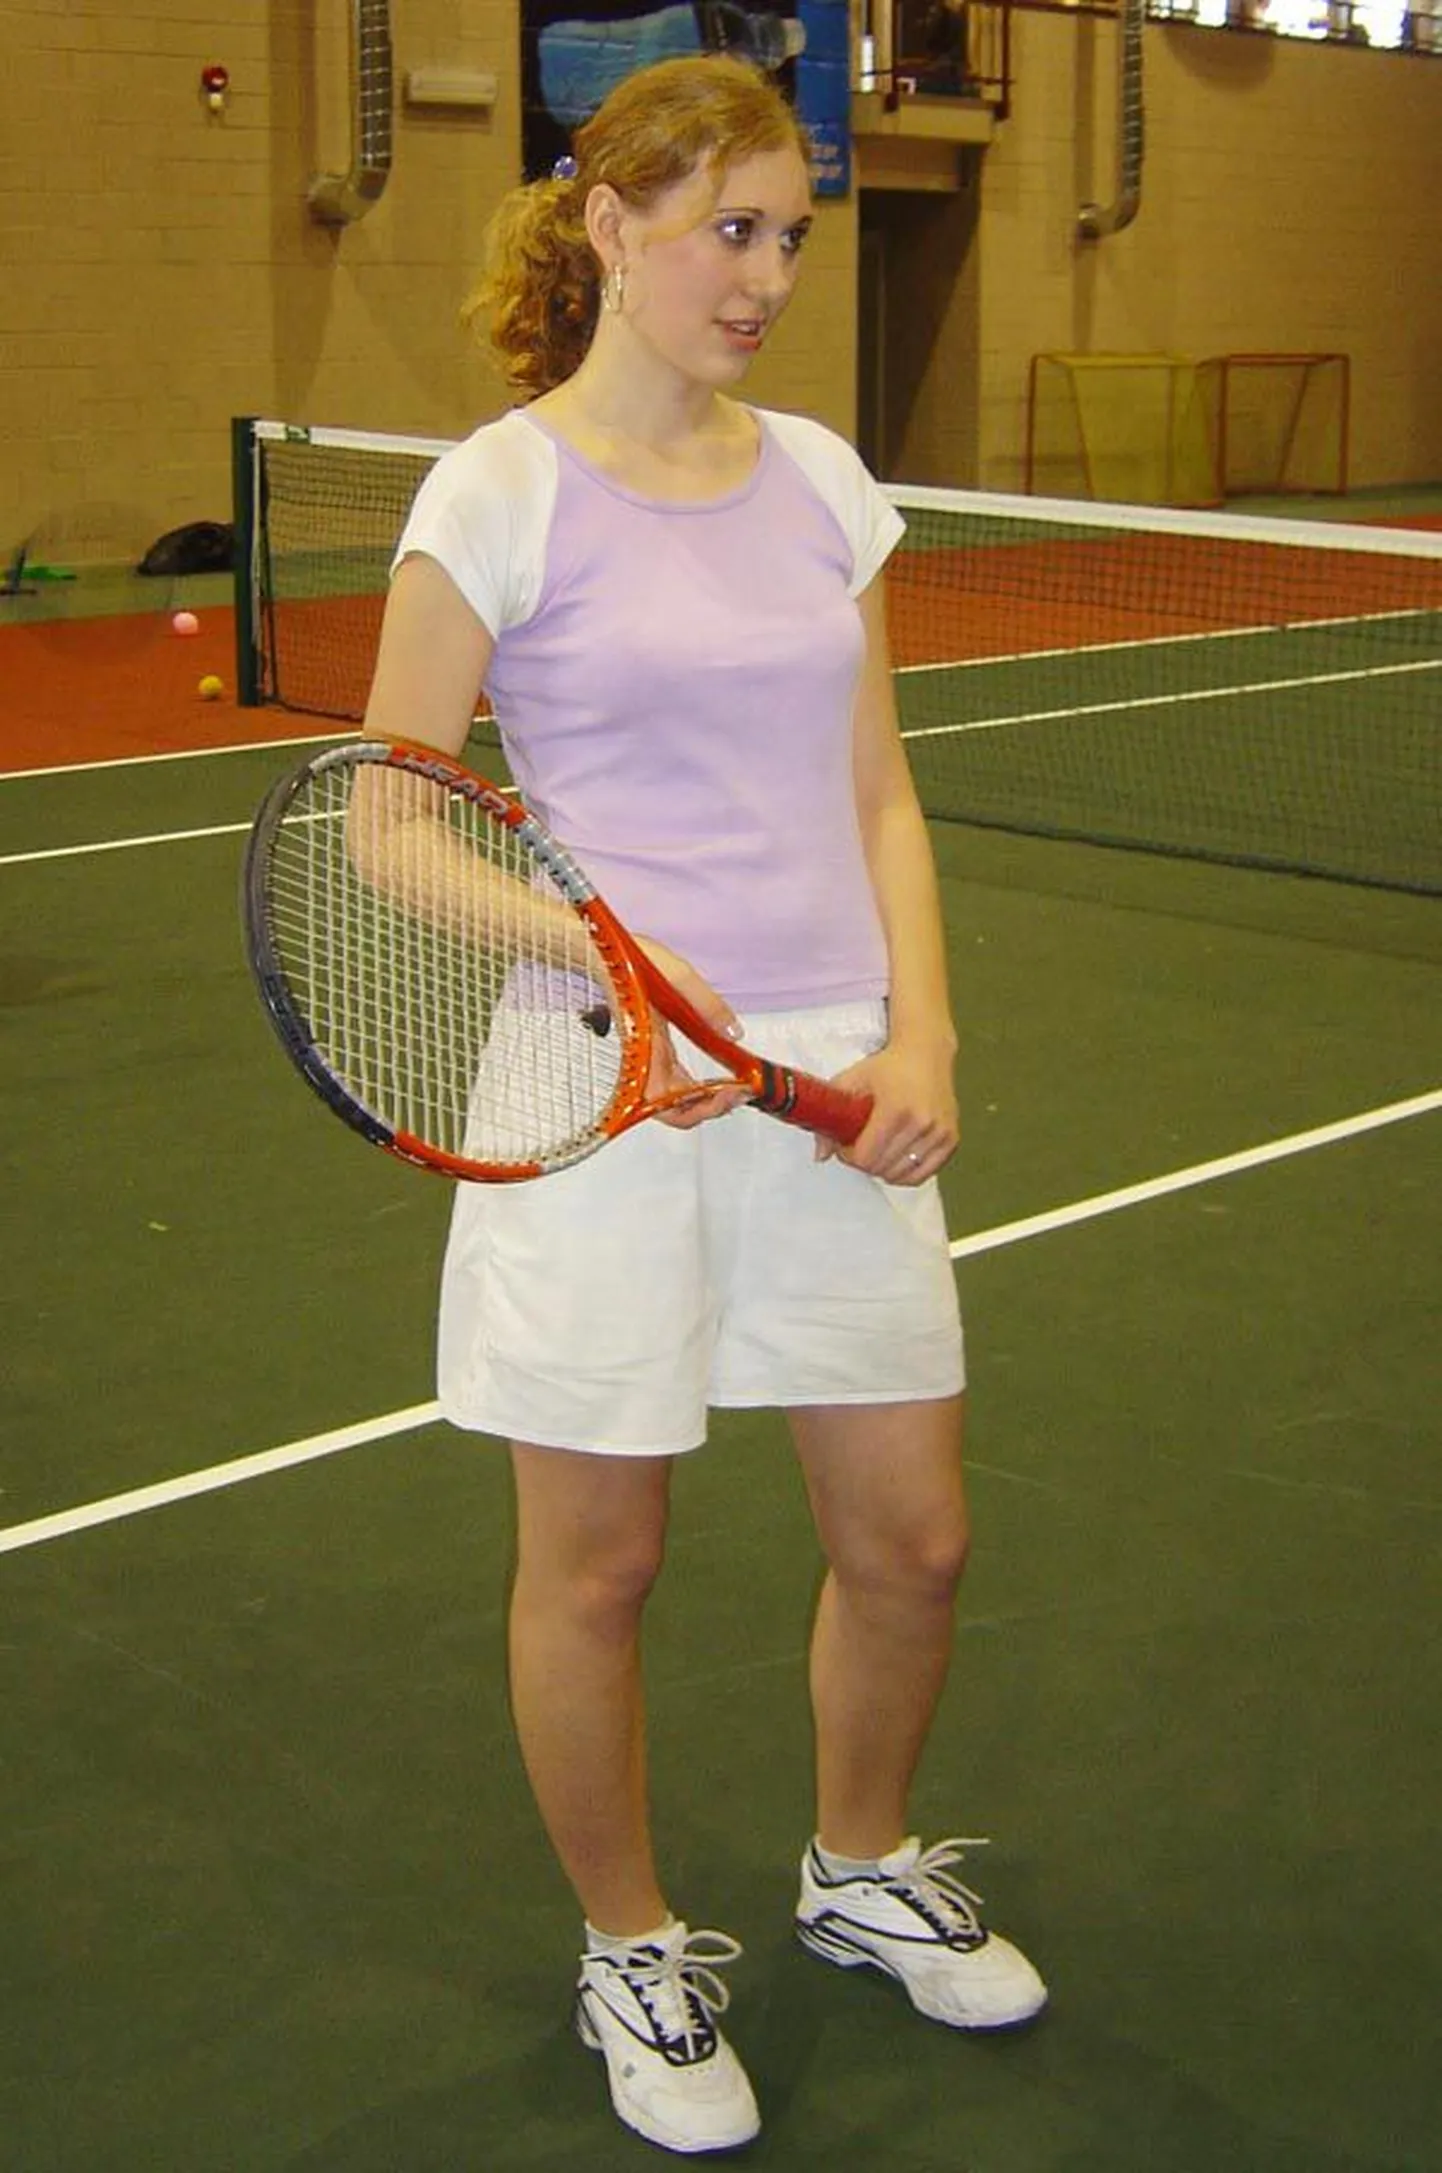 Pärnu tennisekooli kasvandik, 16aastane Anu Sieberk võitis koduhallis linna meistritiitli nii omaealiste kui aasta vanemate neidude konkurentsis.